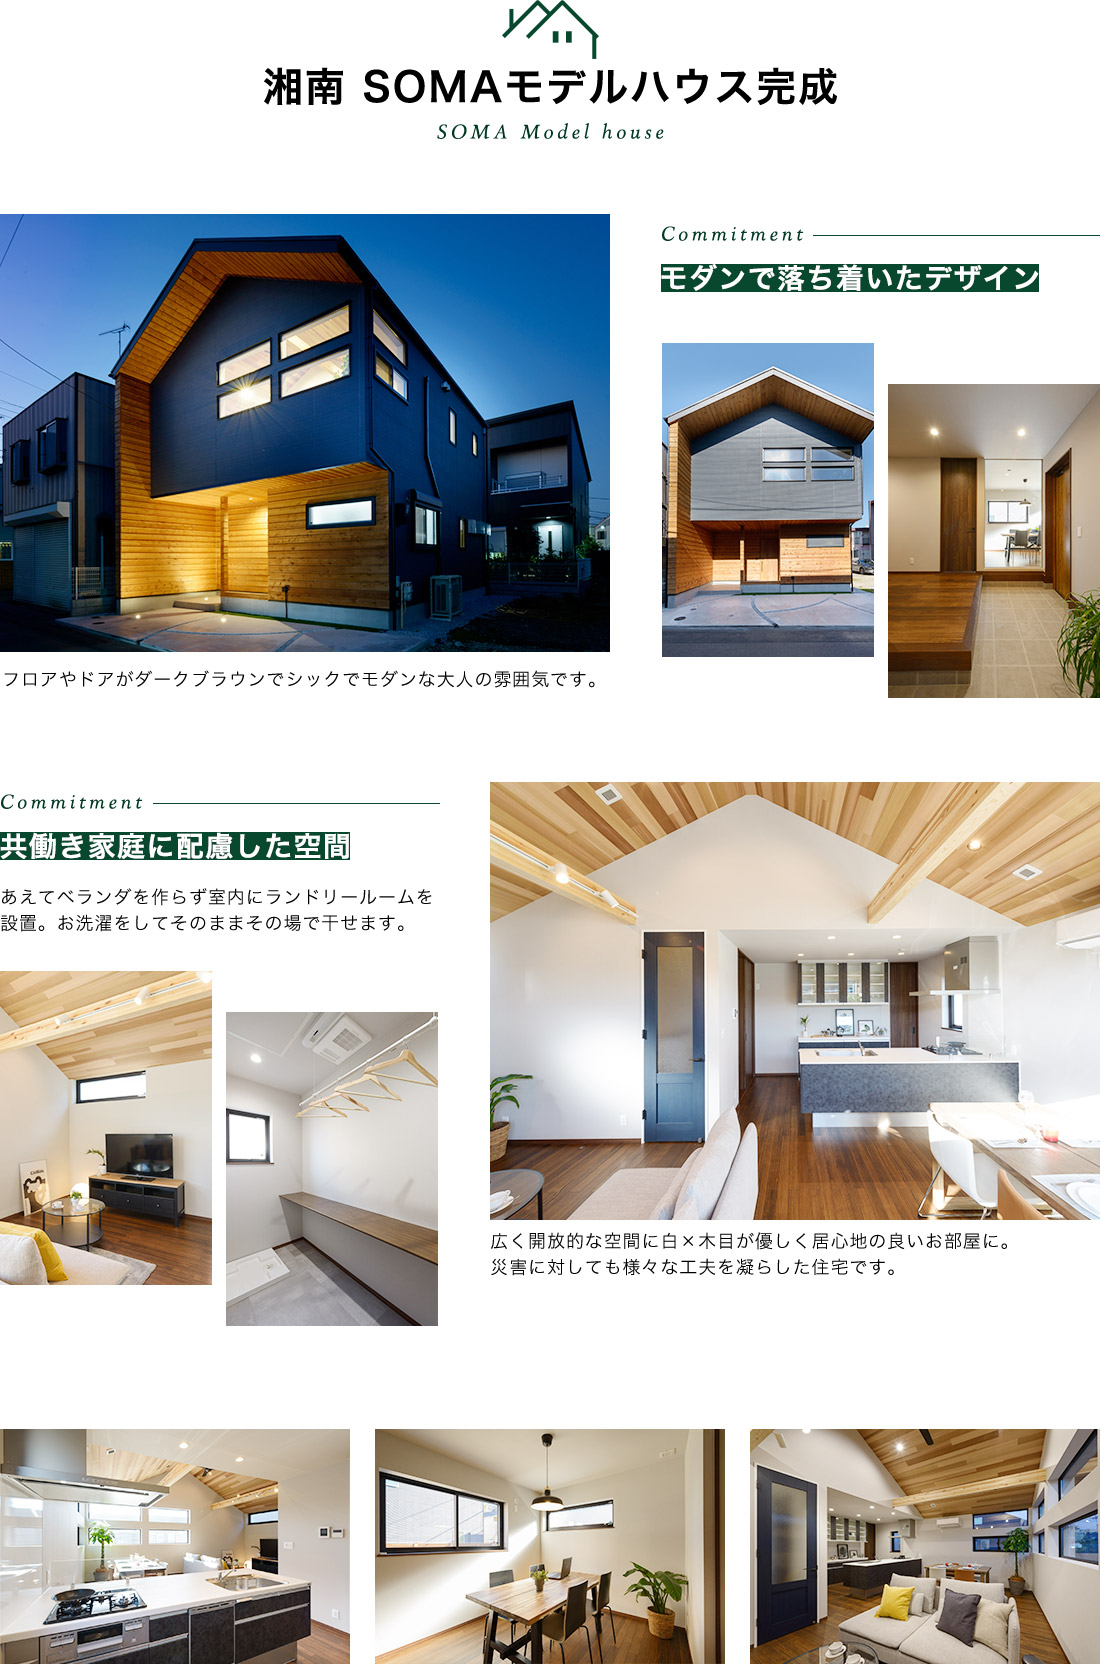 共働き家庭に配慮したシックでモダンな藤沢市モデルハウスが完成しました。災害に対しても工夫を凝らした住宅です。